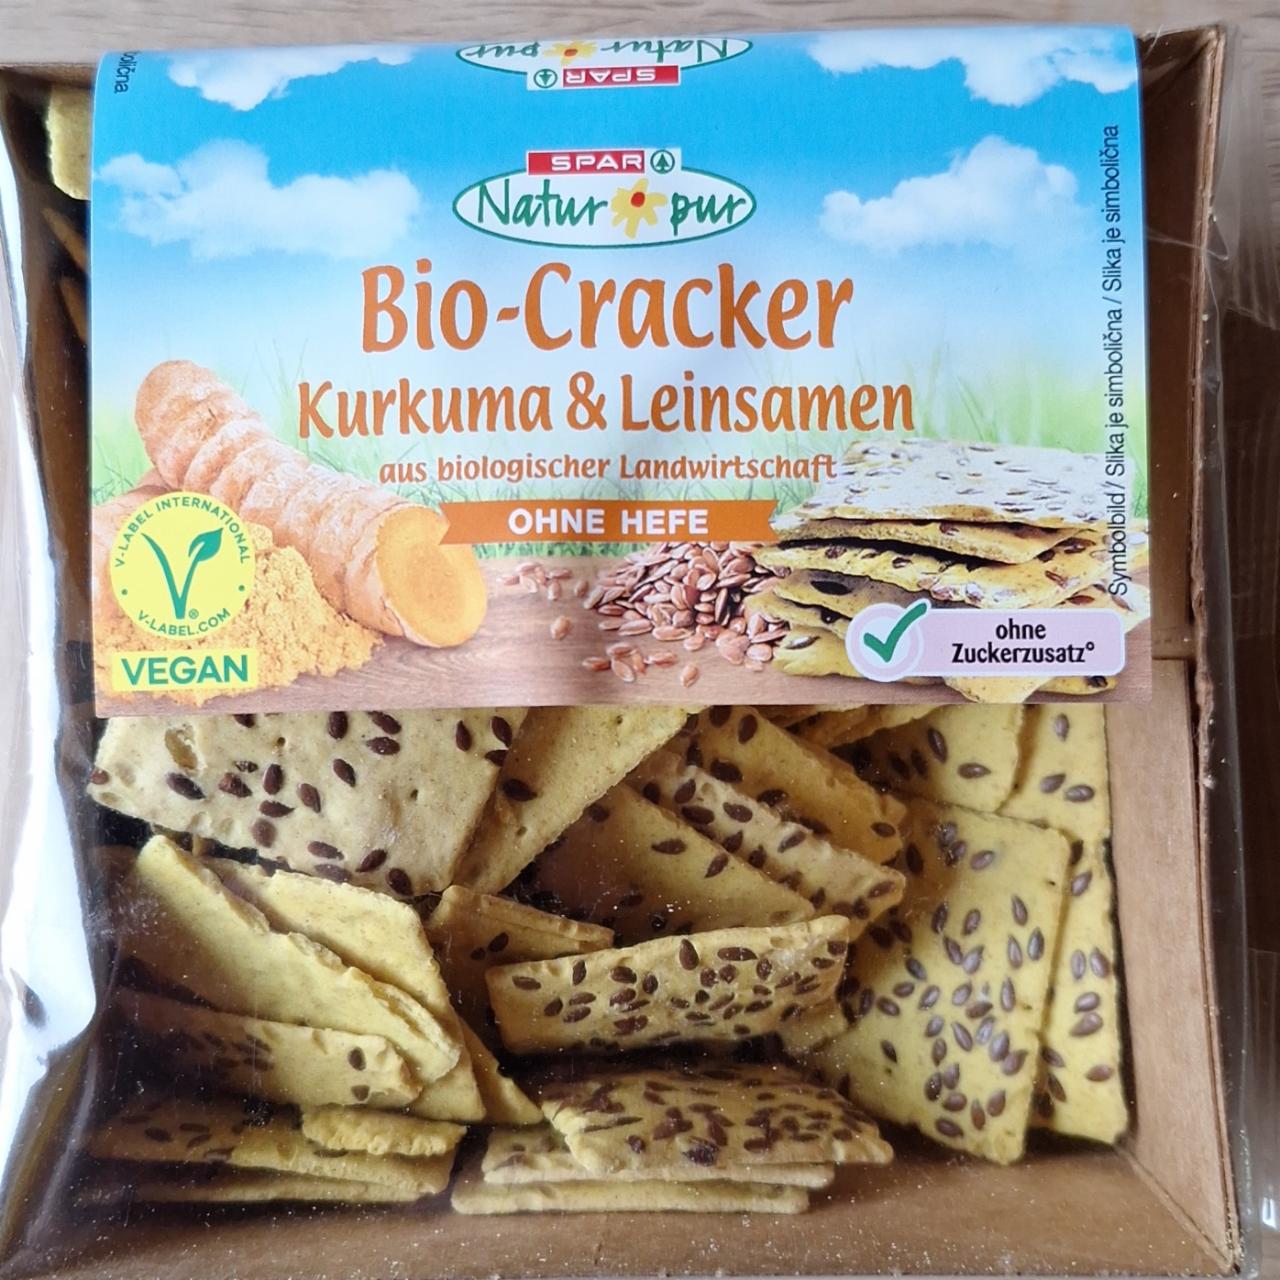 Fotografie - Bio-Cracker Kurkuma & Leinsamen Spar Natur pur